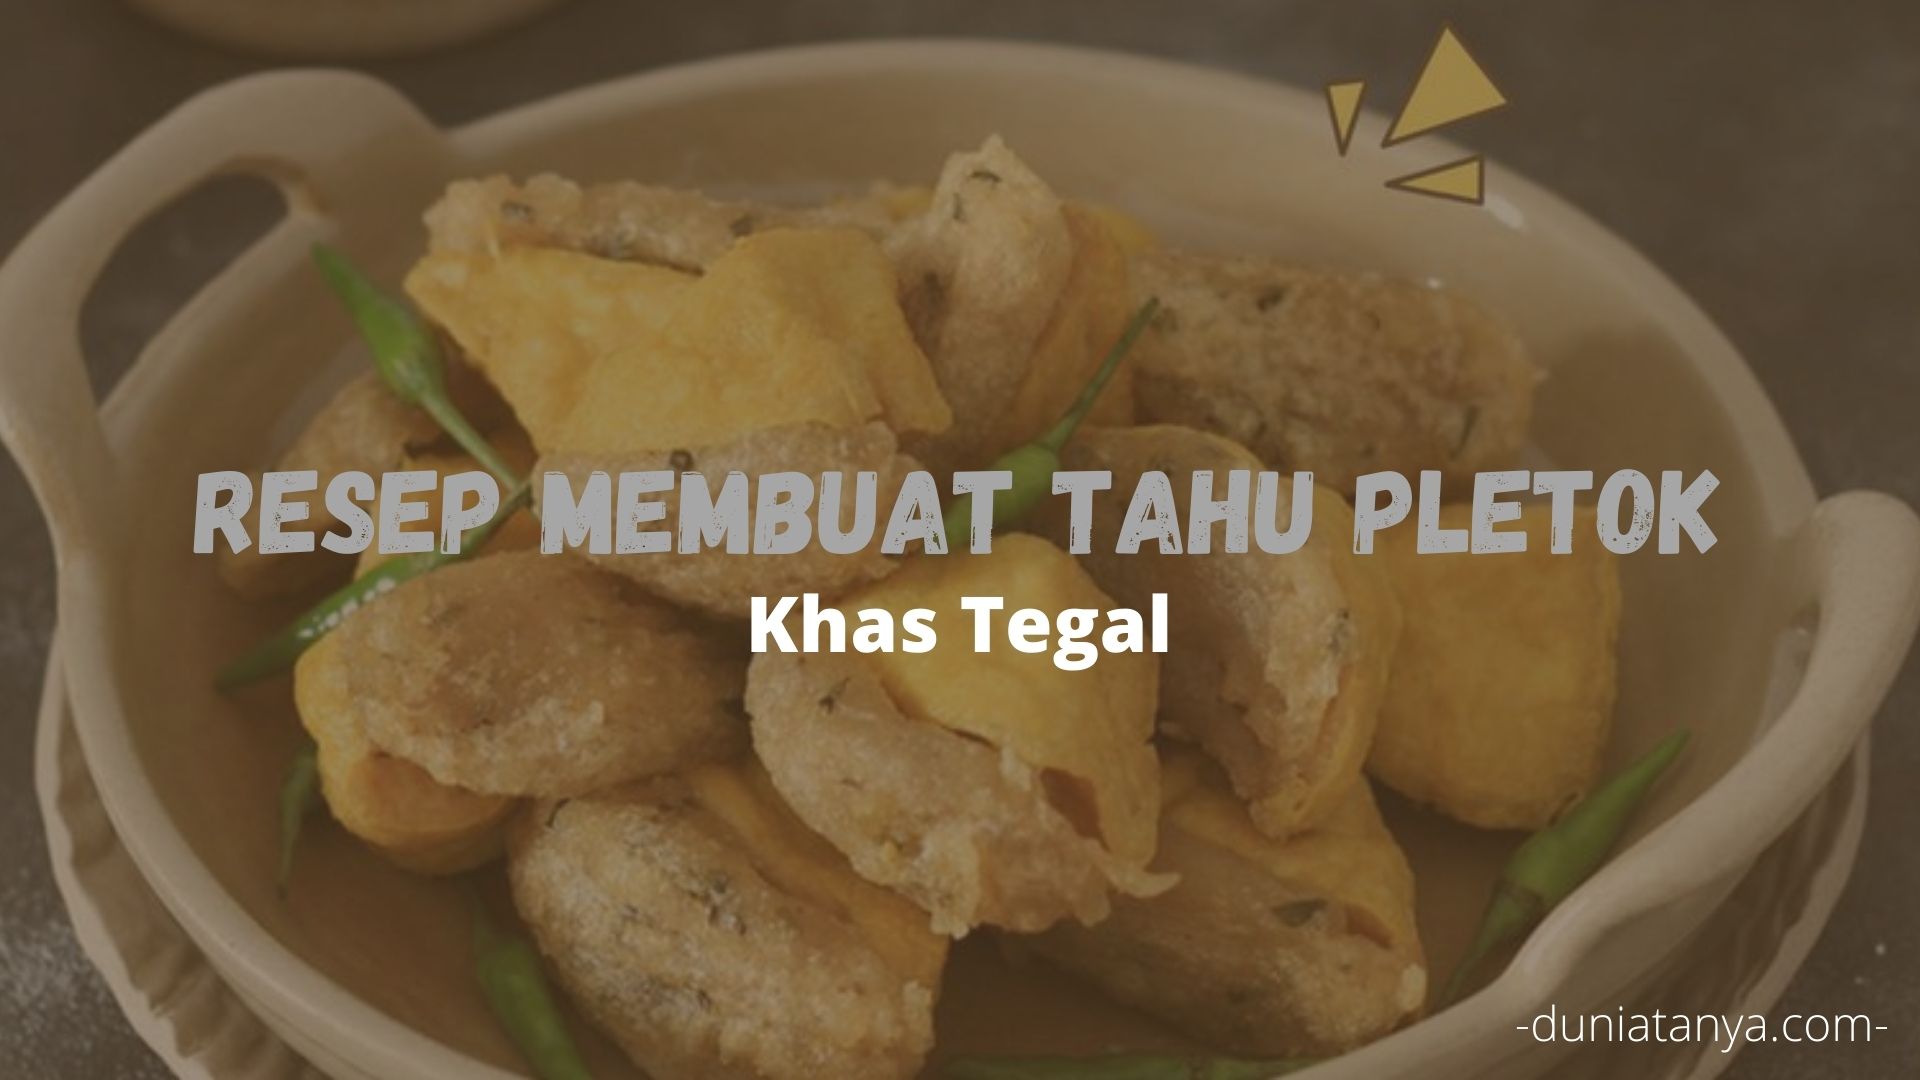 You are currently viewing Resep Membuat Tahu Pletok Khas Tegal